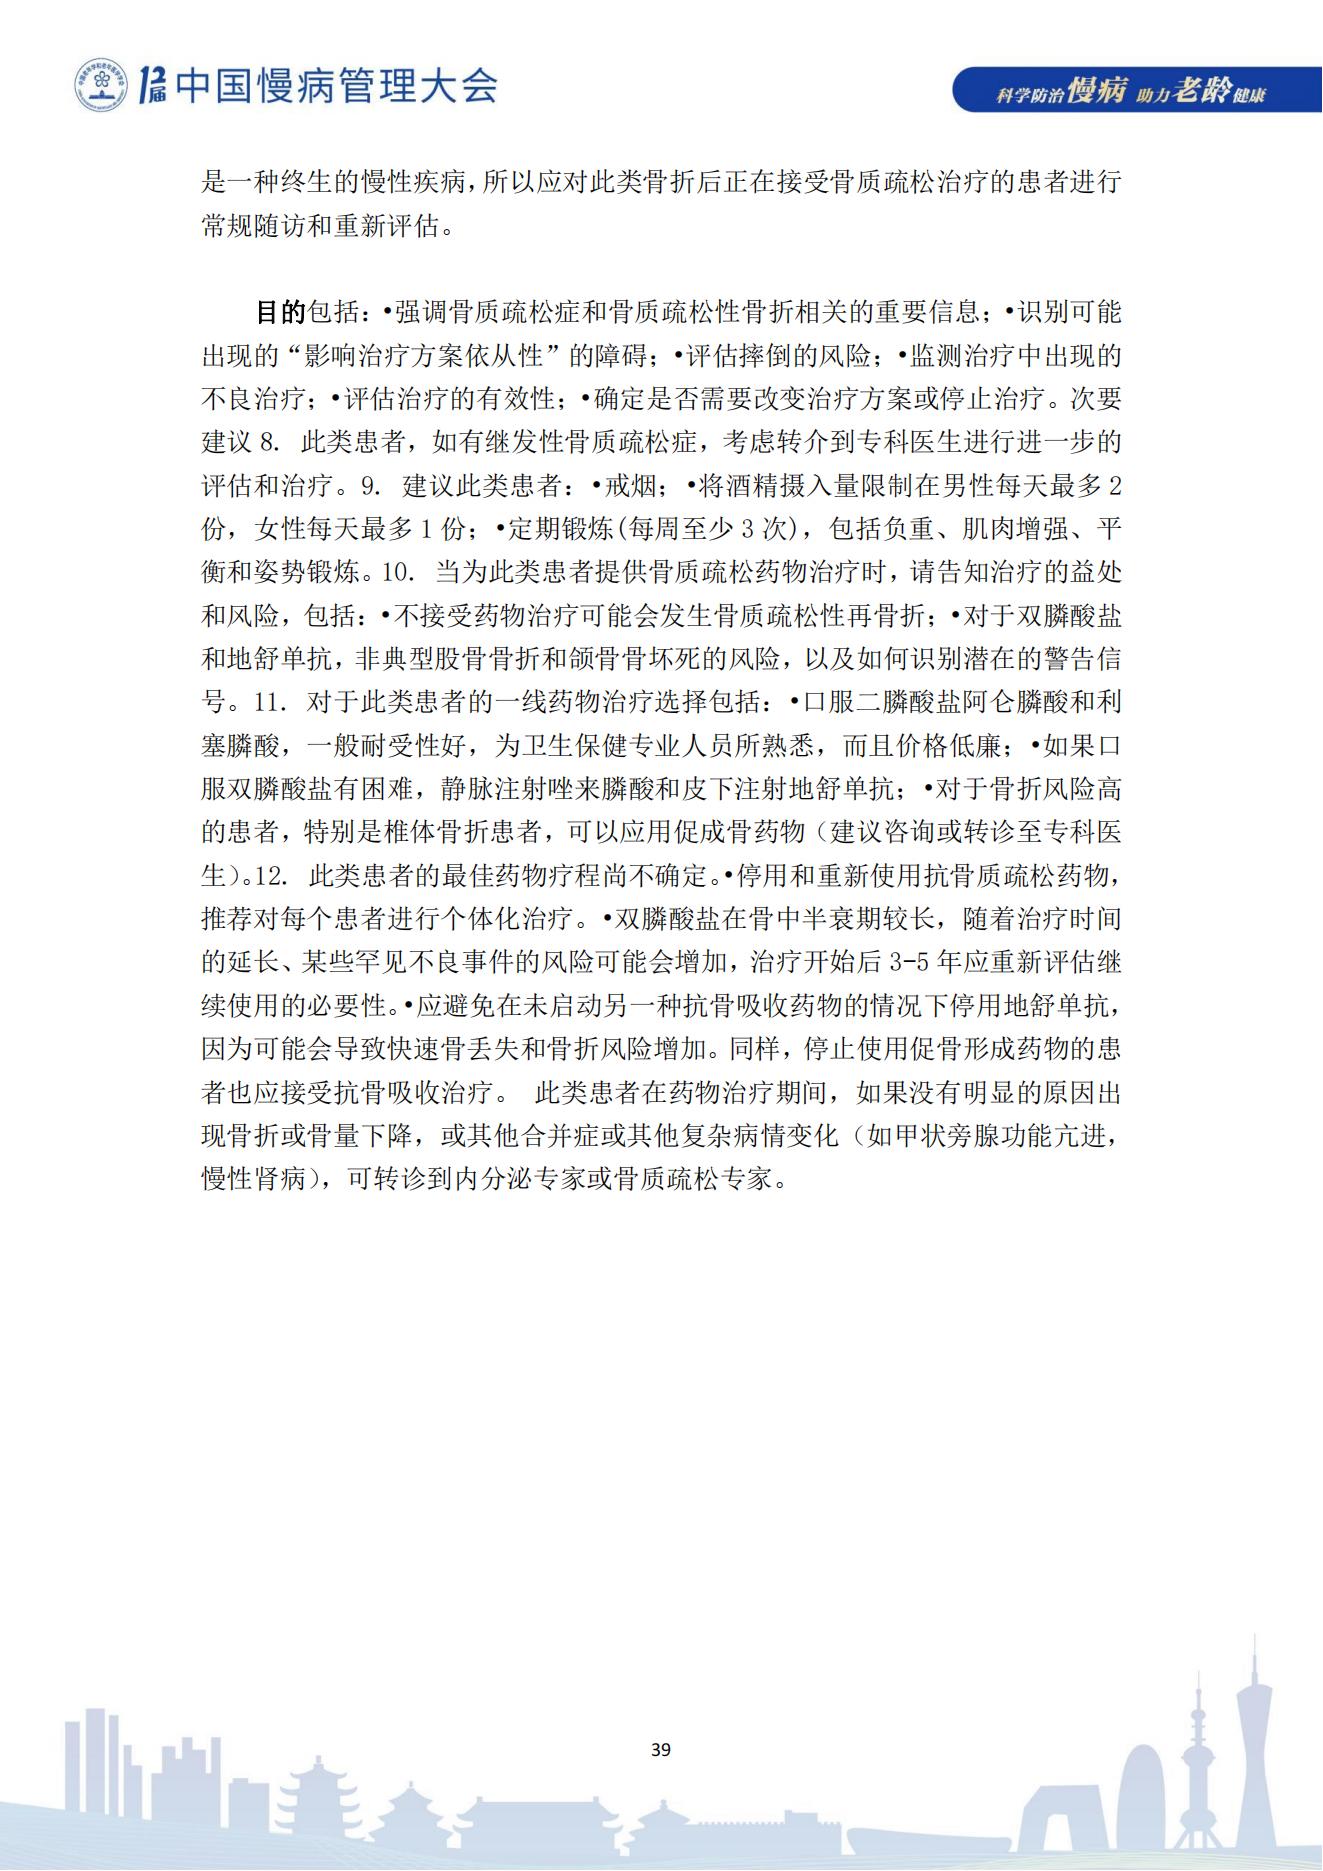 第十二届中国慢病管理大会获奖论文（电子版）0823_39.jpg